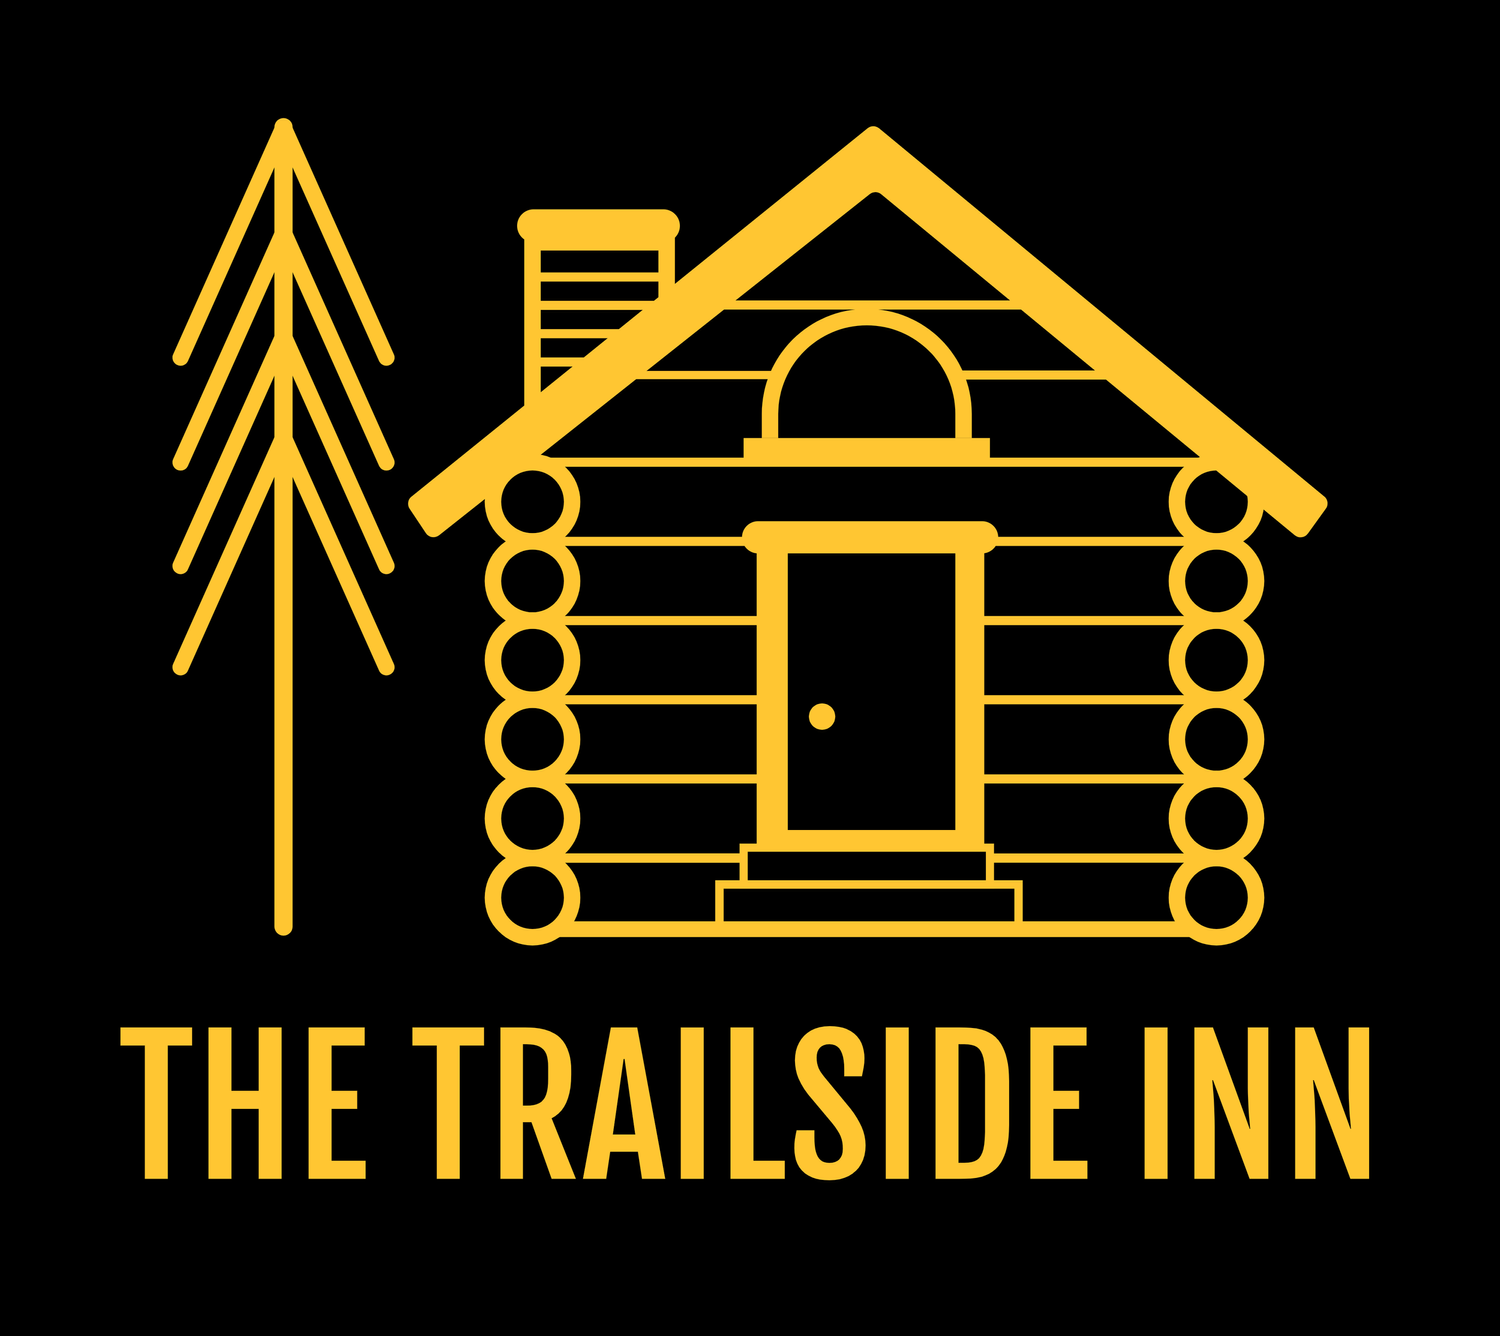 The Trailside Inn